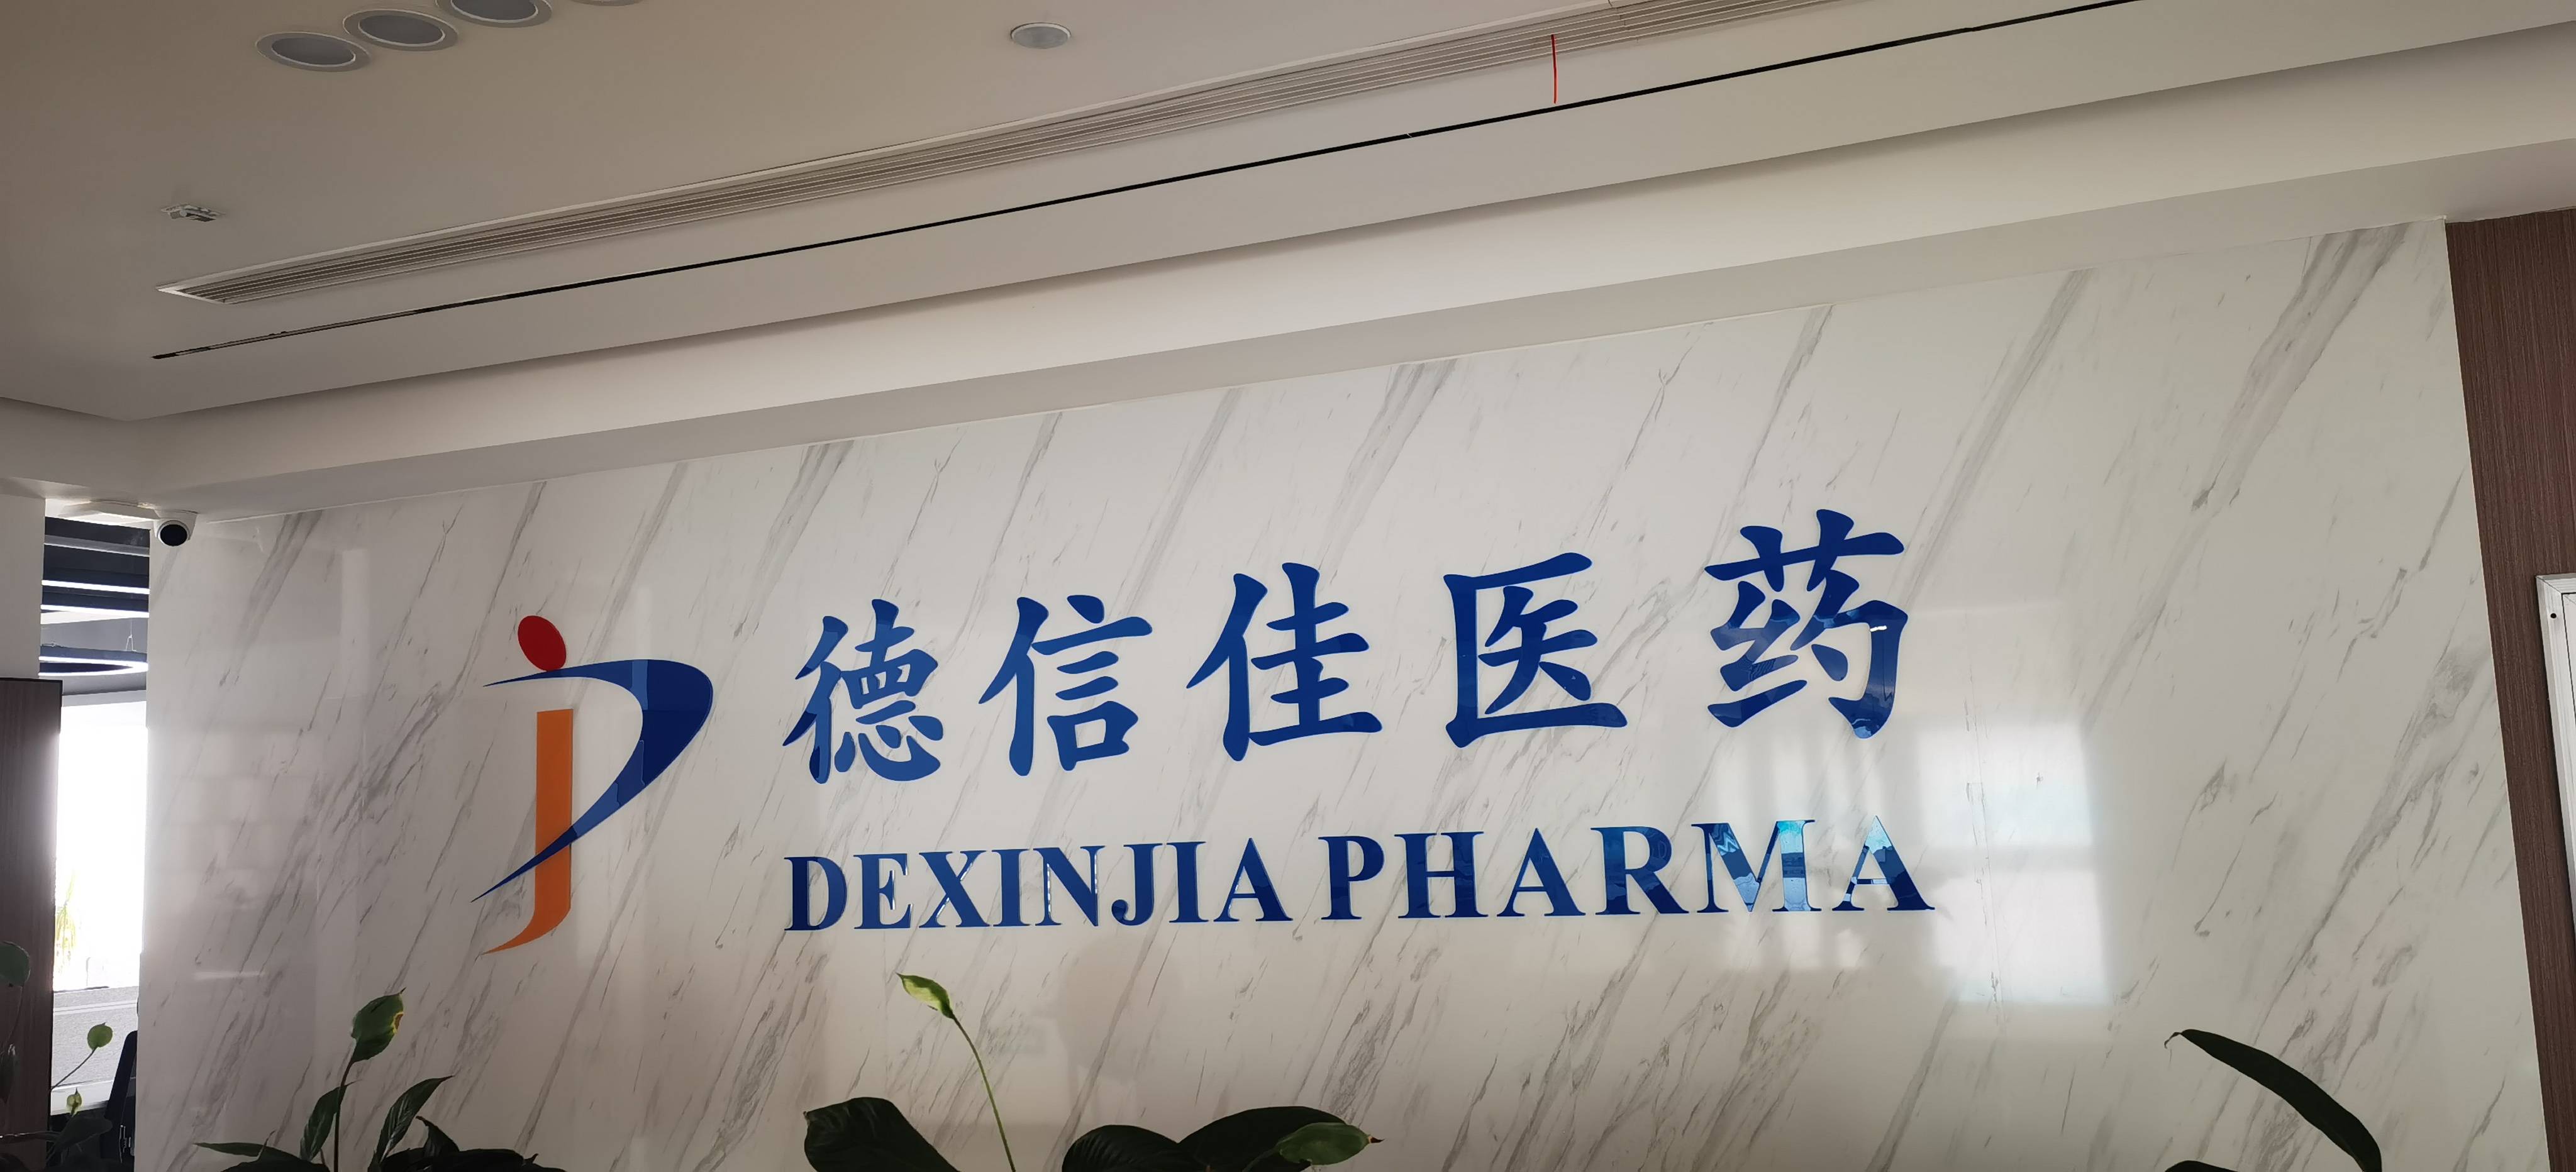 Anhui Dexinjia Biopharm Co., Ltd